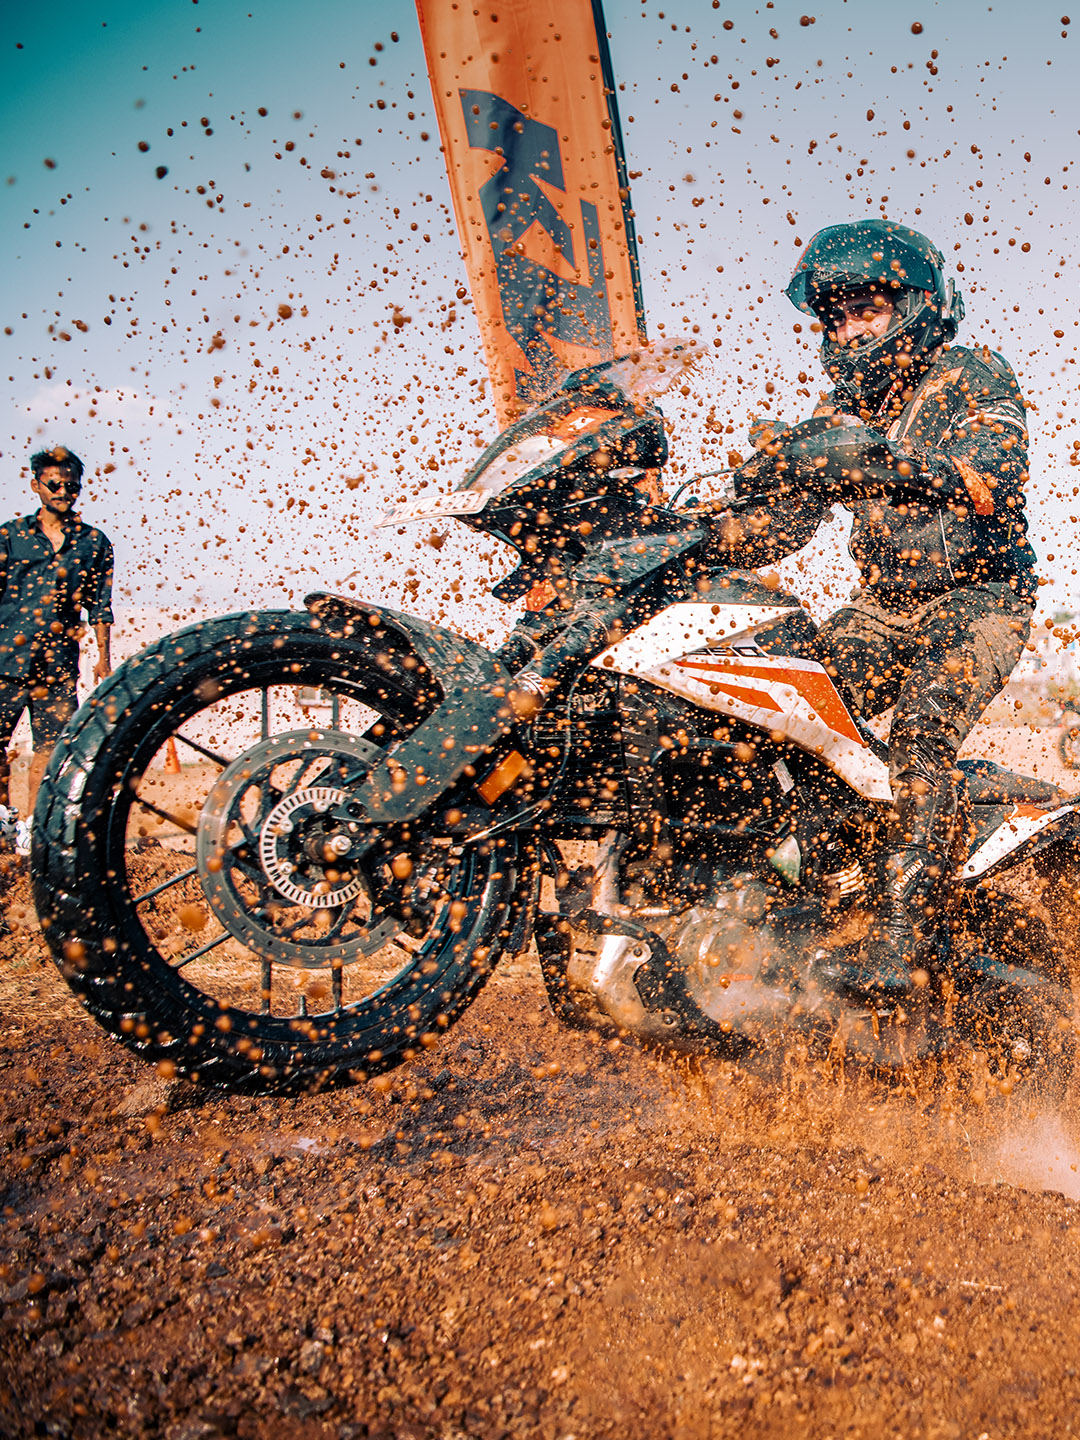 KTM adventure experience in mud